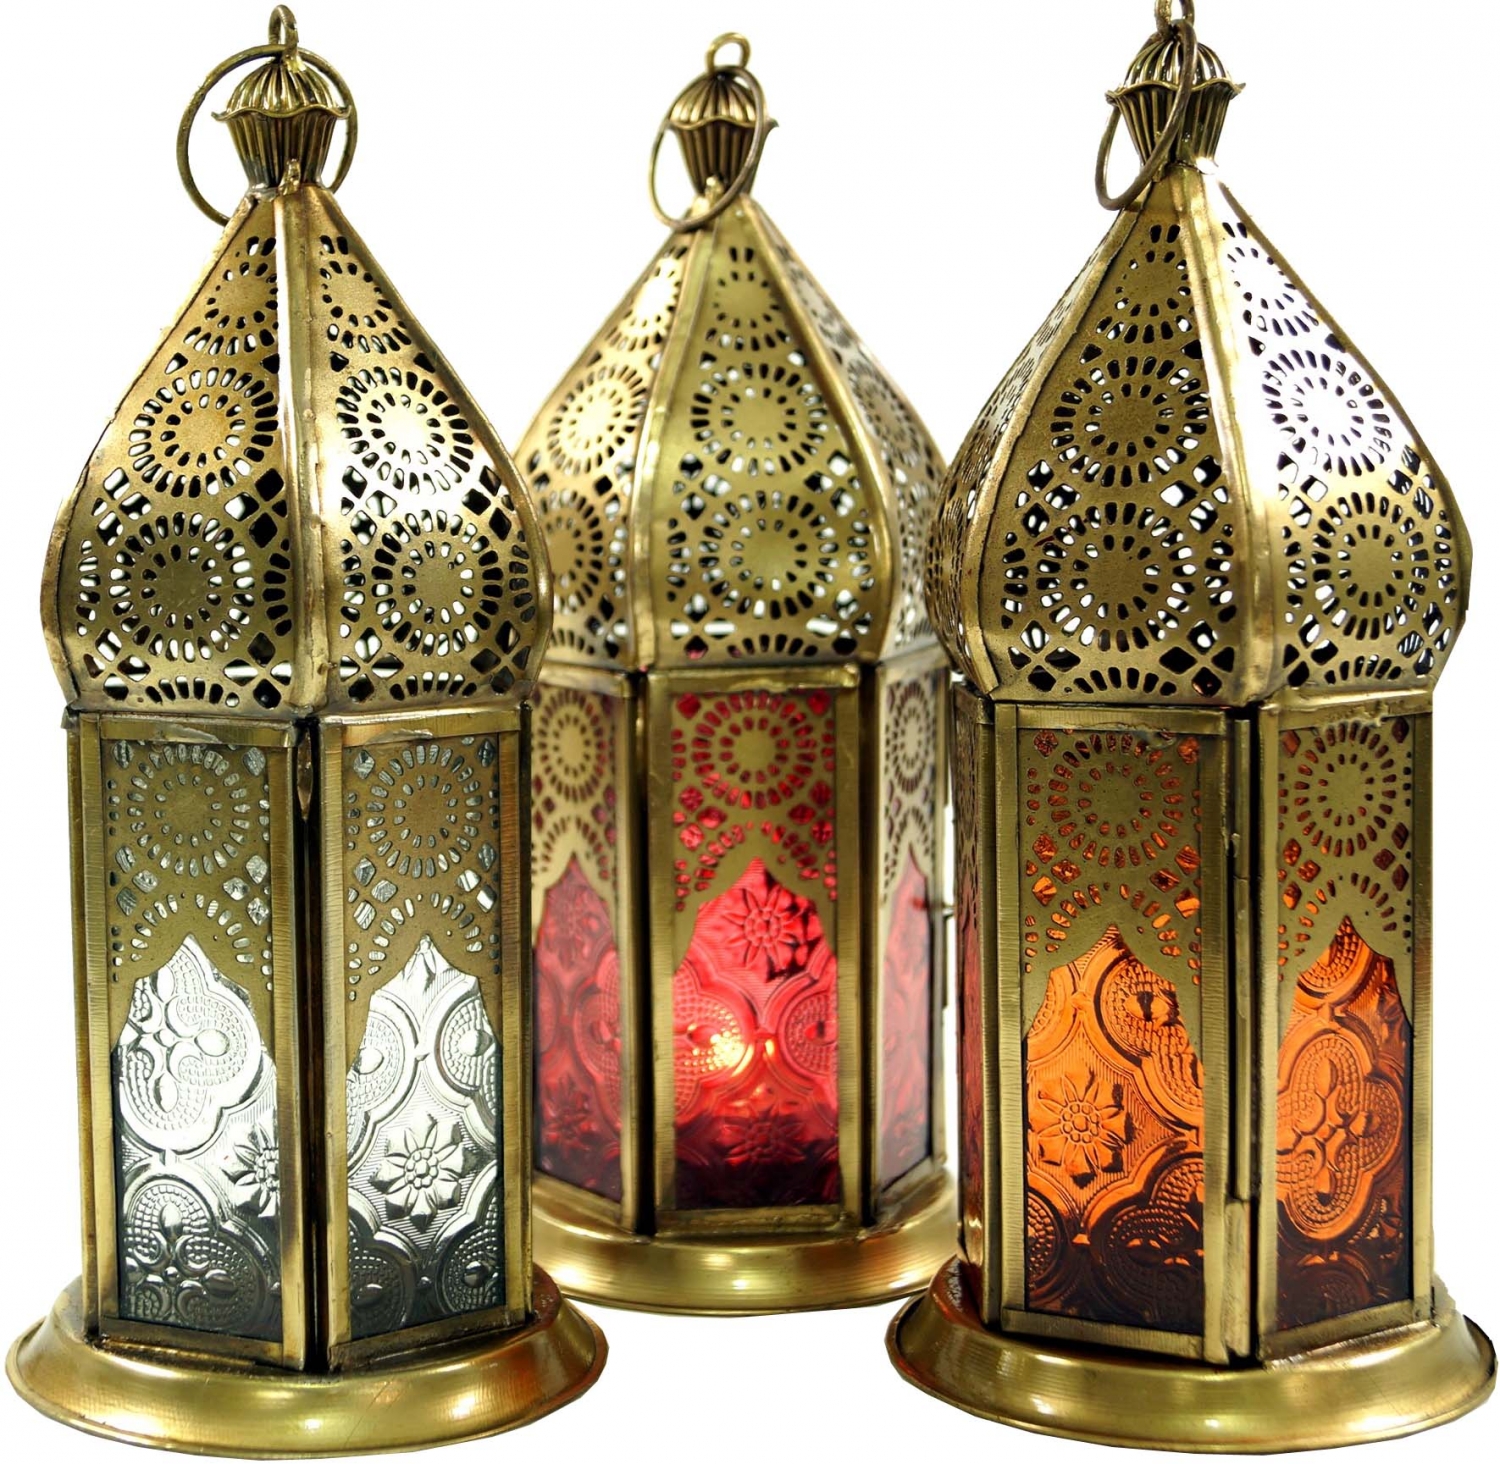 Windlicht Orientalische Metall/Glas Laterne in marrokanischem Design 